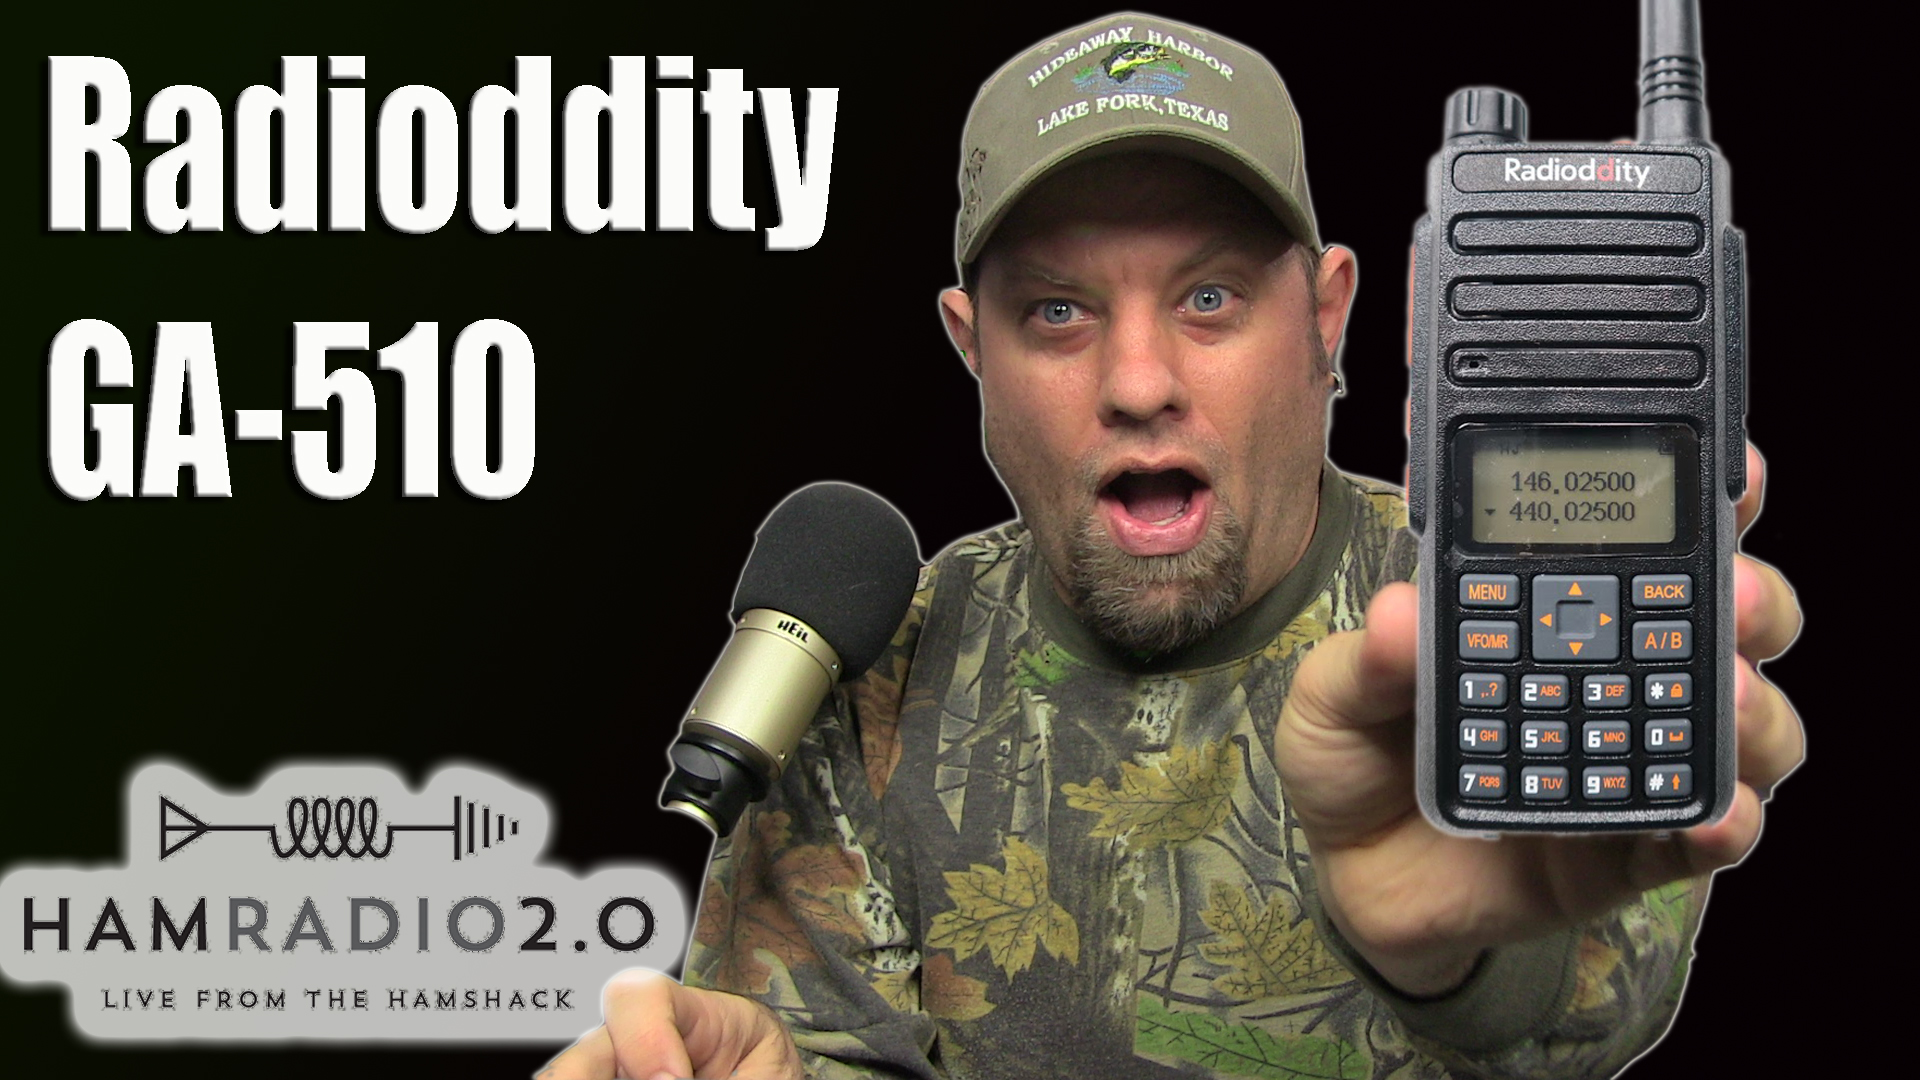 Episode 305: Radioddity GA-510 10-Watt Handheld Review